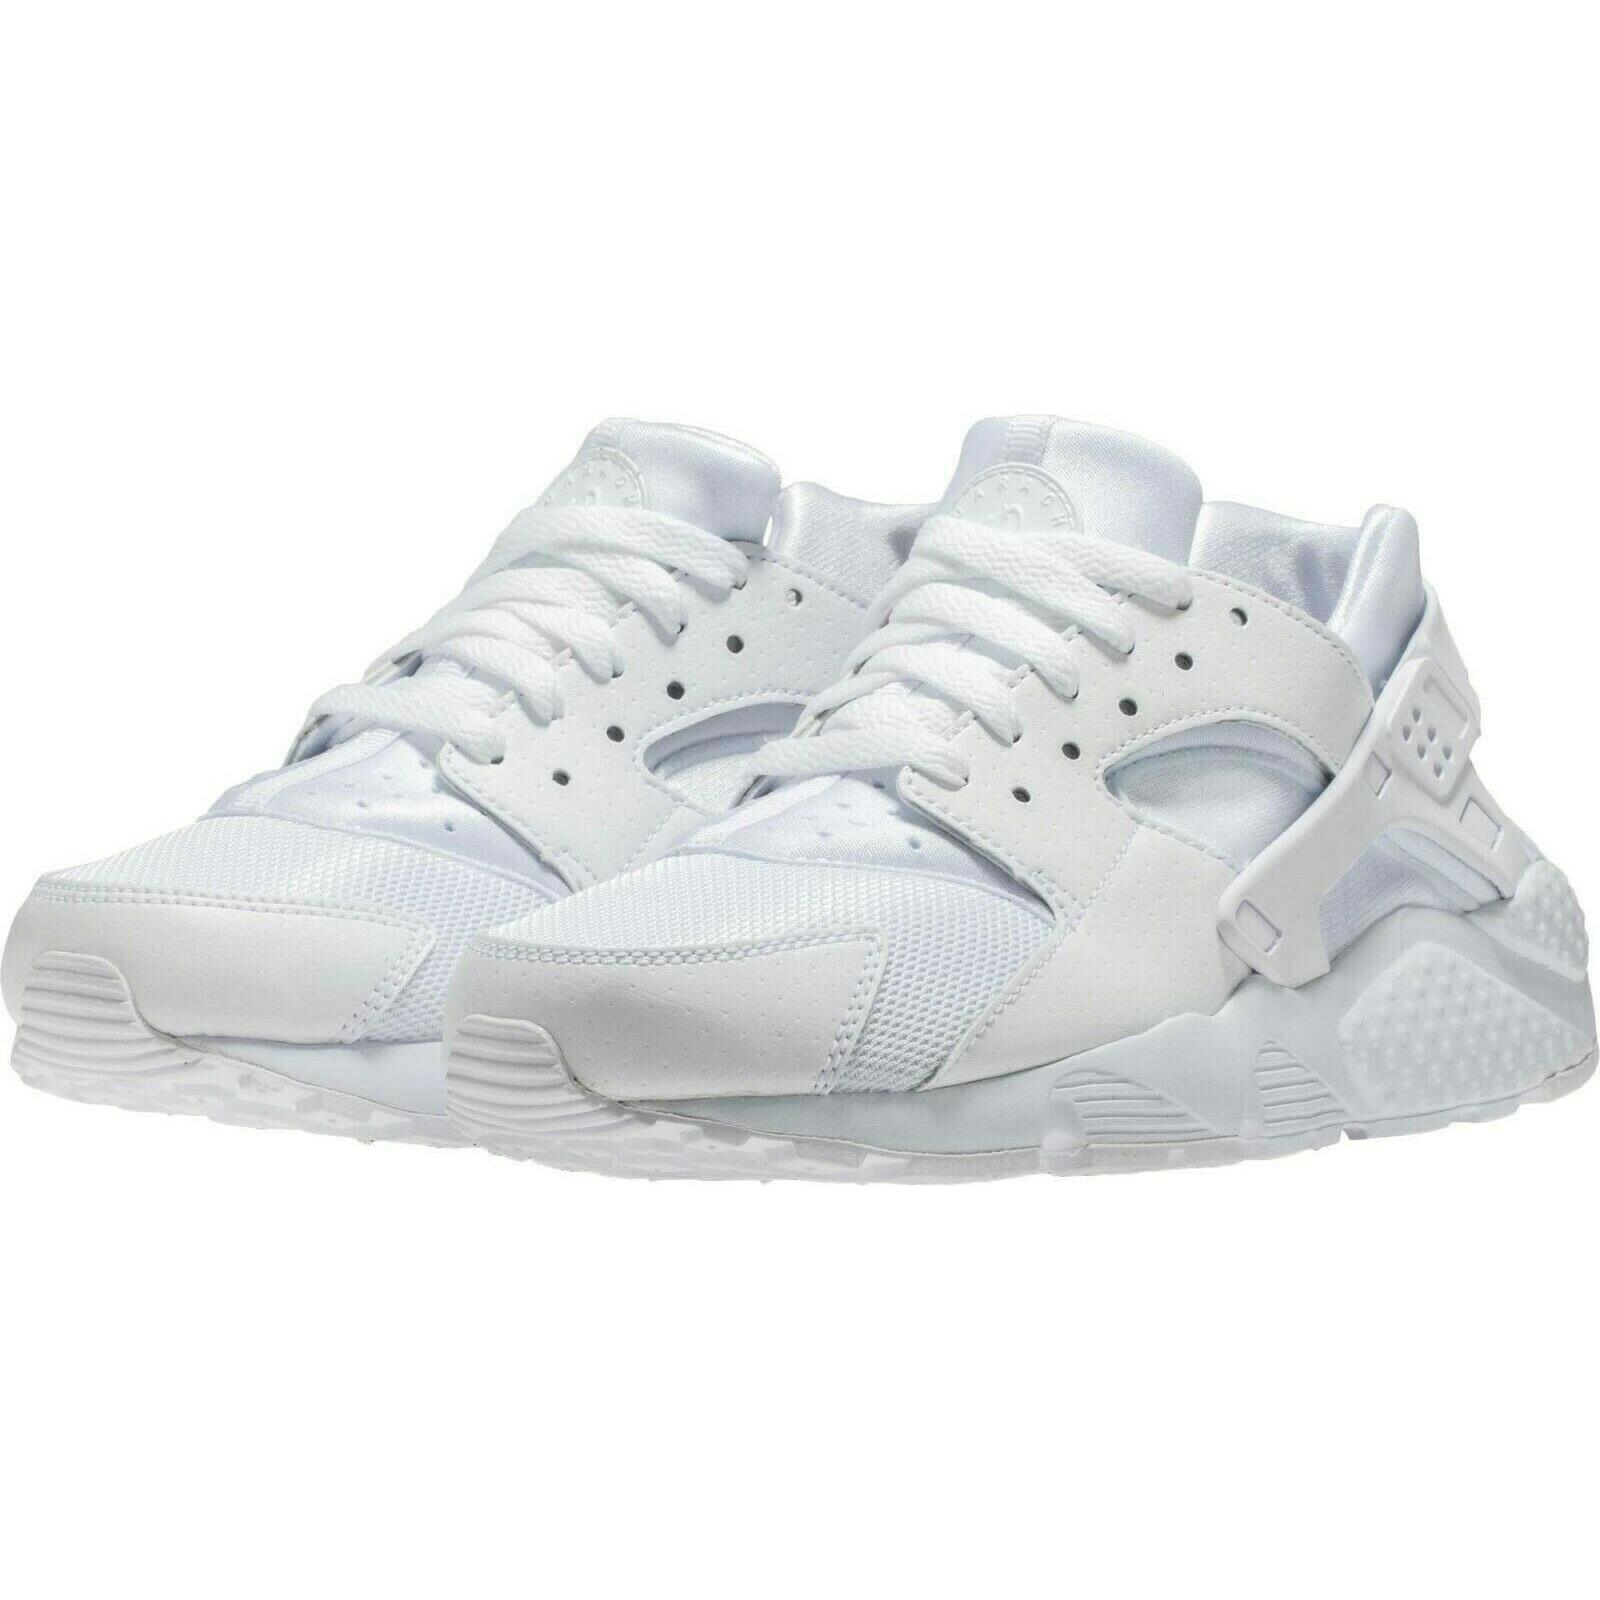 Nike Huarache Run GS Size 6Y Sneaker Shoes 654275 110 Triple White